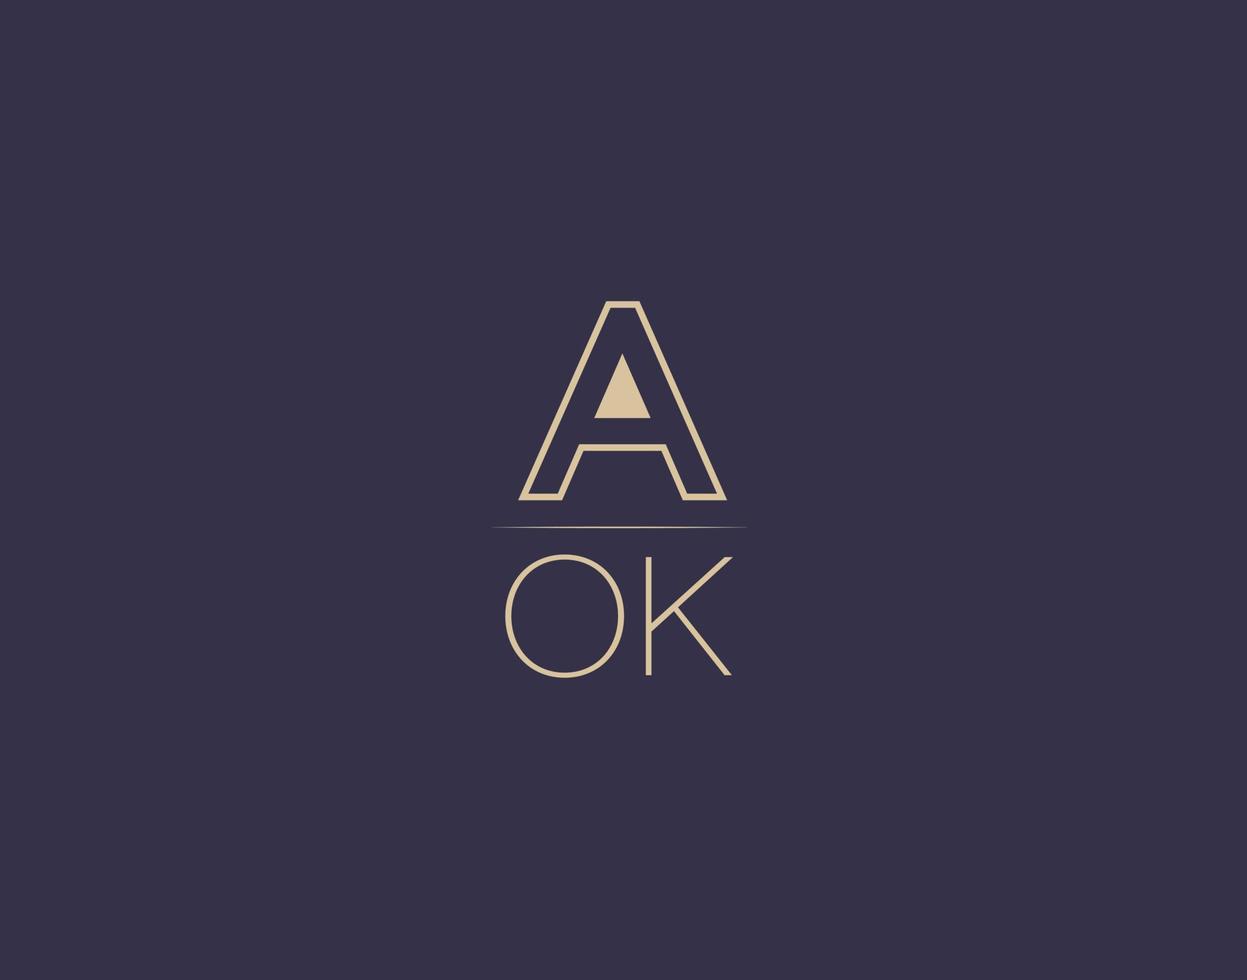 aok carta logotipo diseño moderno minimalista vector imágenes